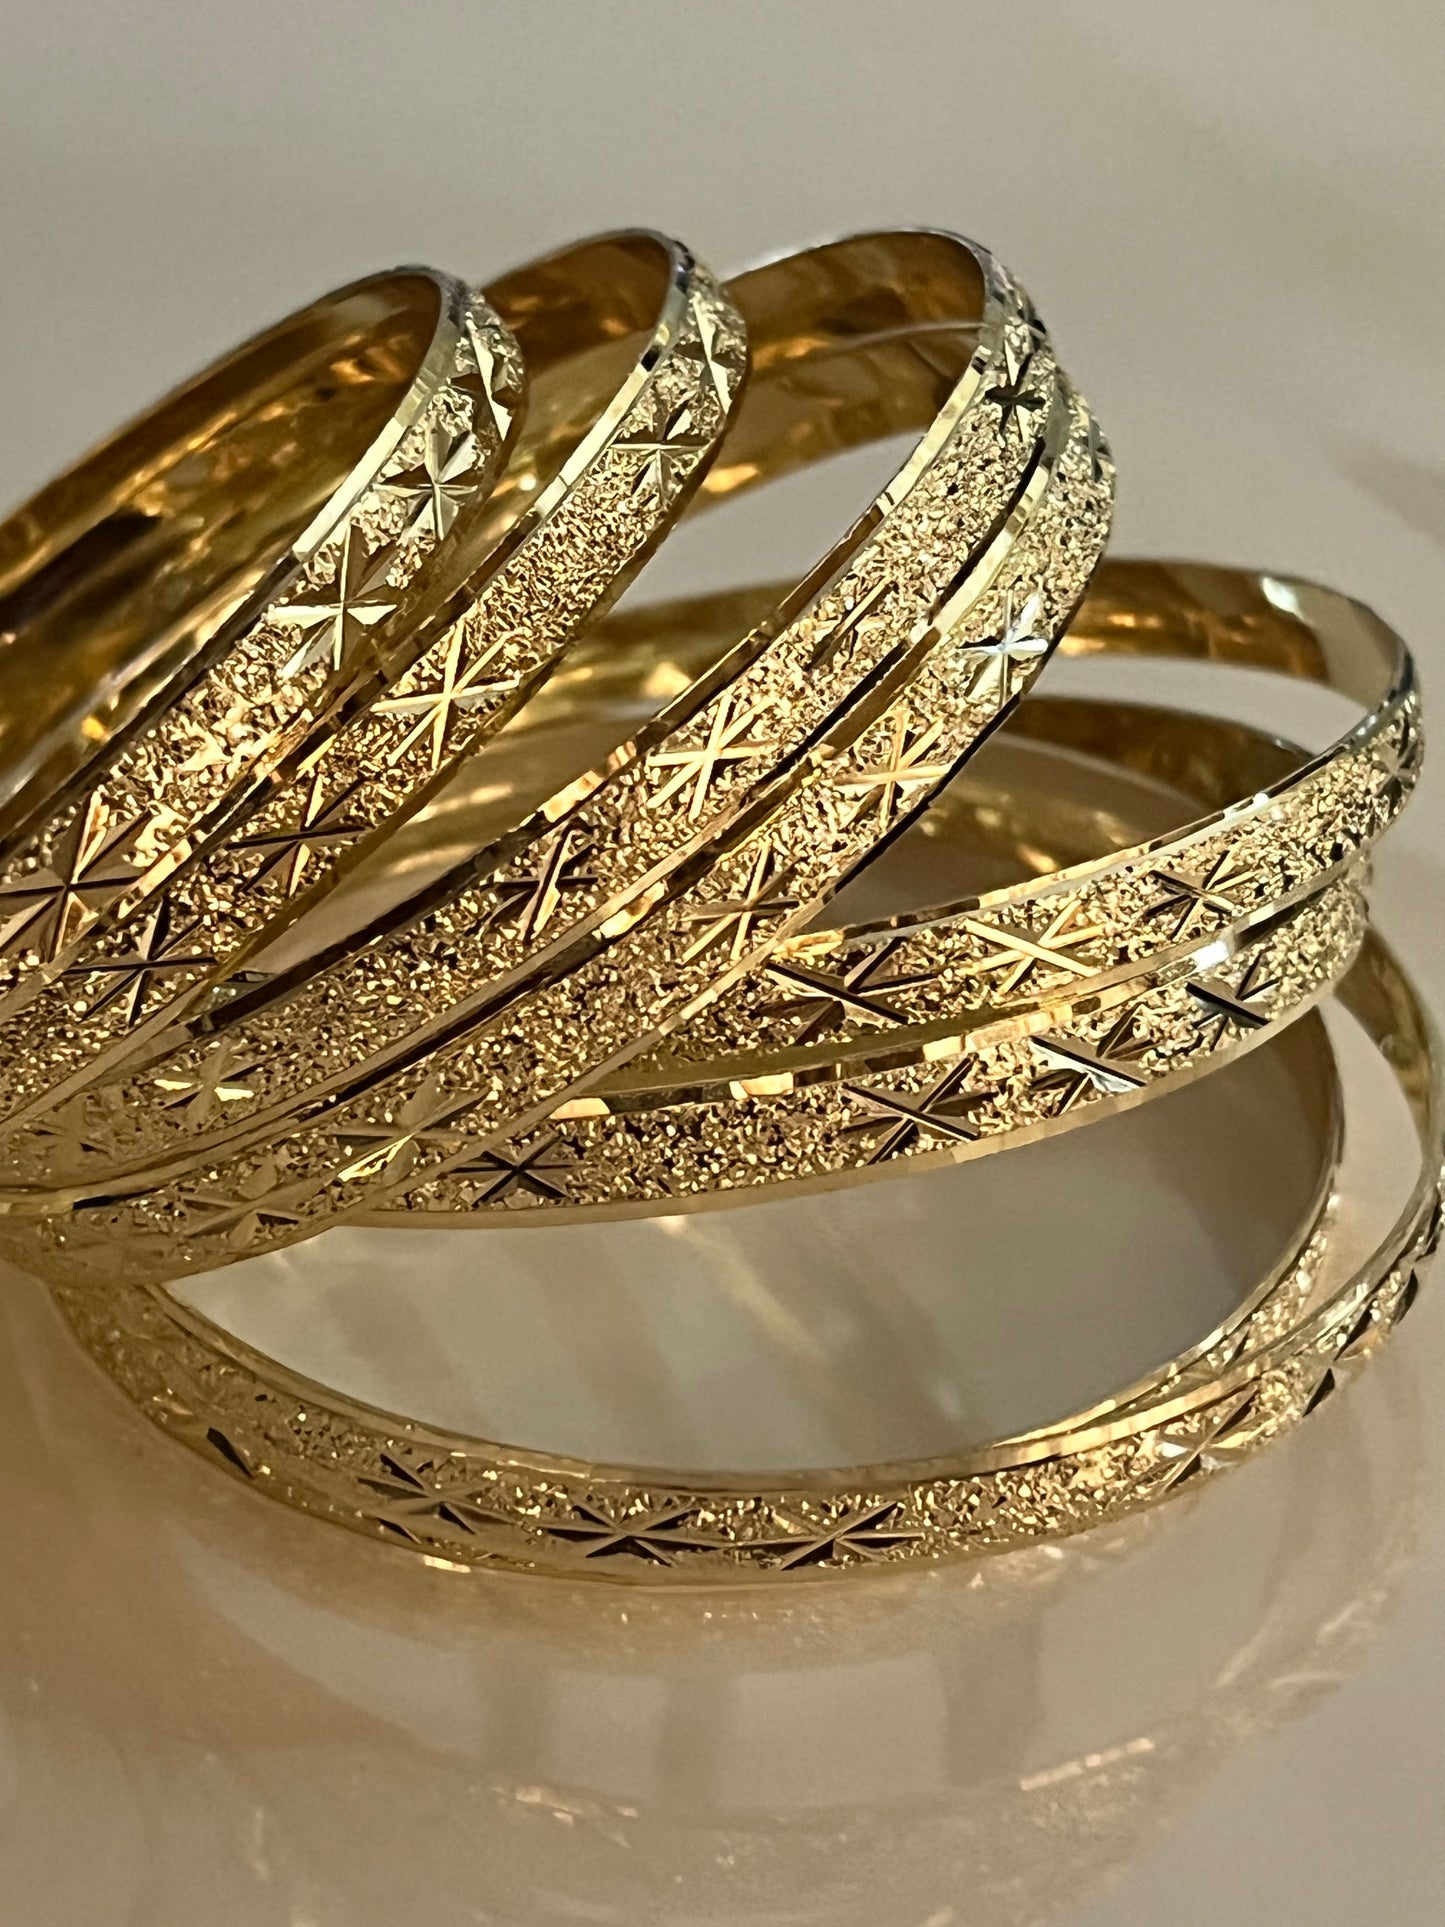 “Kimberly” Gold Filled Bangle Size 7